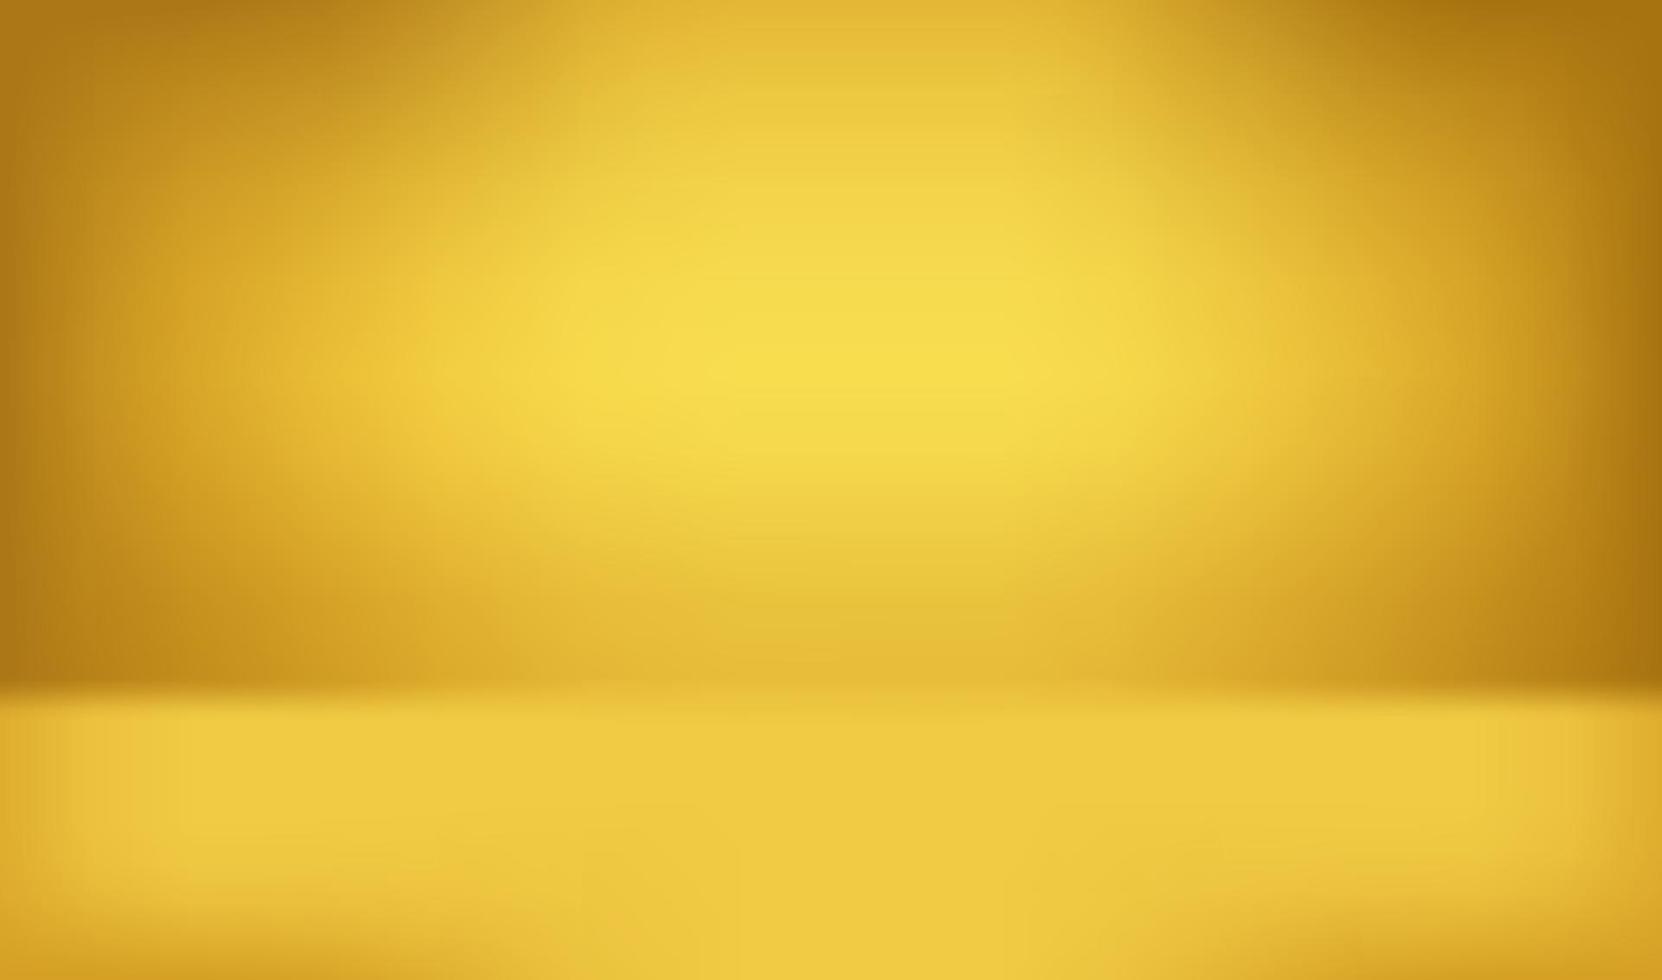 sfondo astratto stanza gialla. illustrazione vettoriale